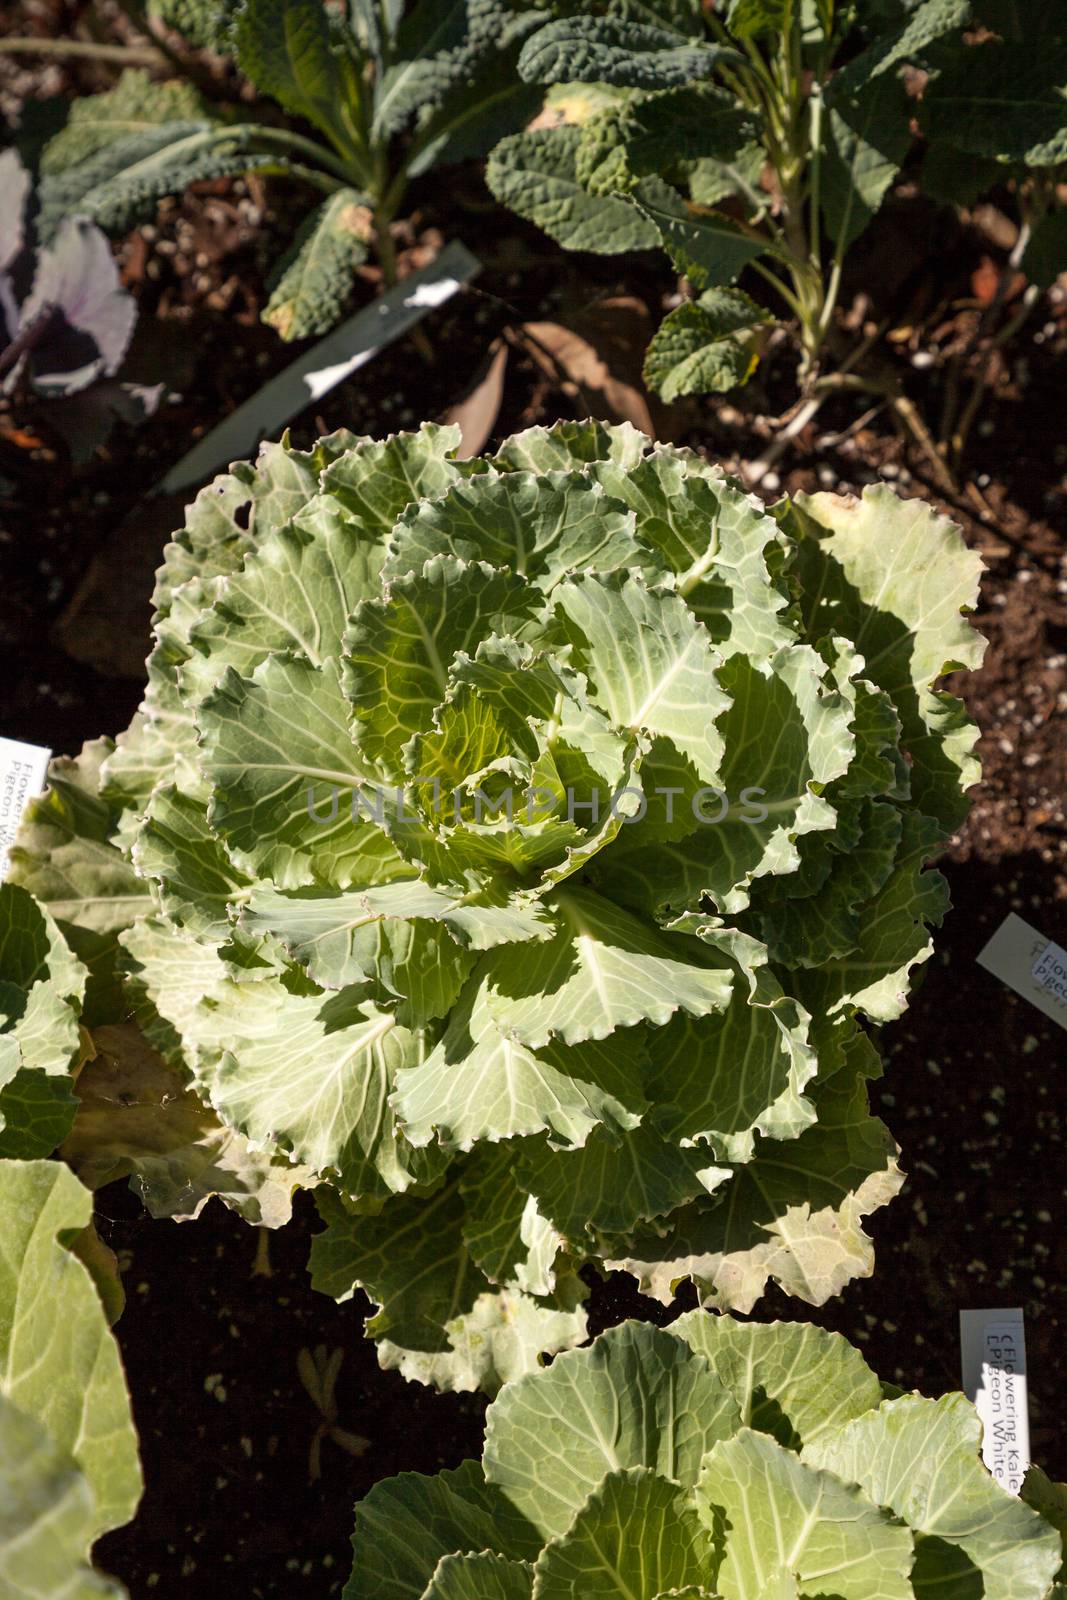 Flowering Kale known as Pigeon white grows in an organic vegetab by steffstarr